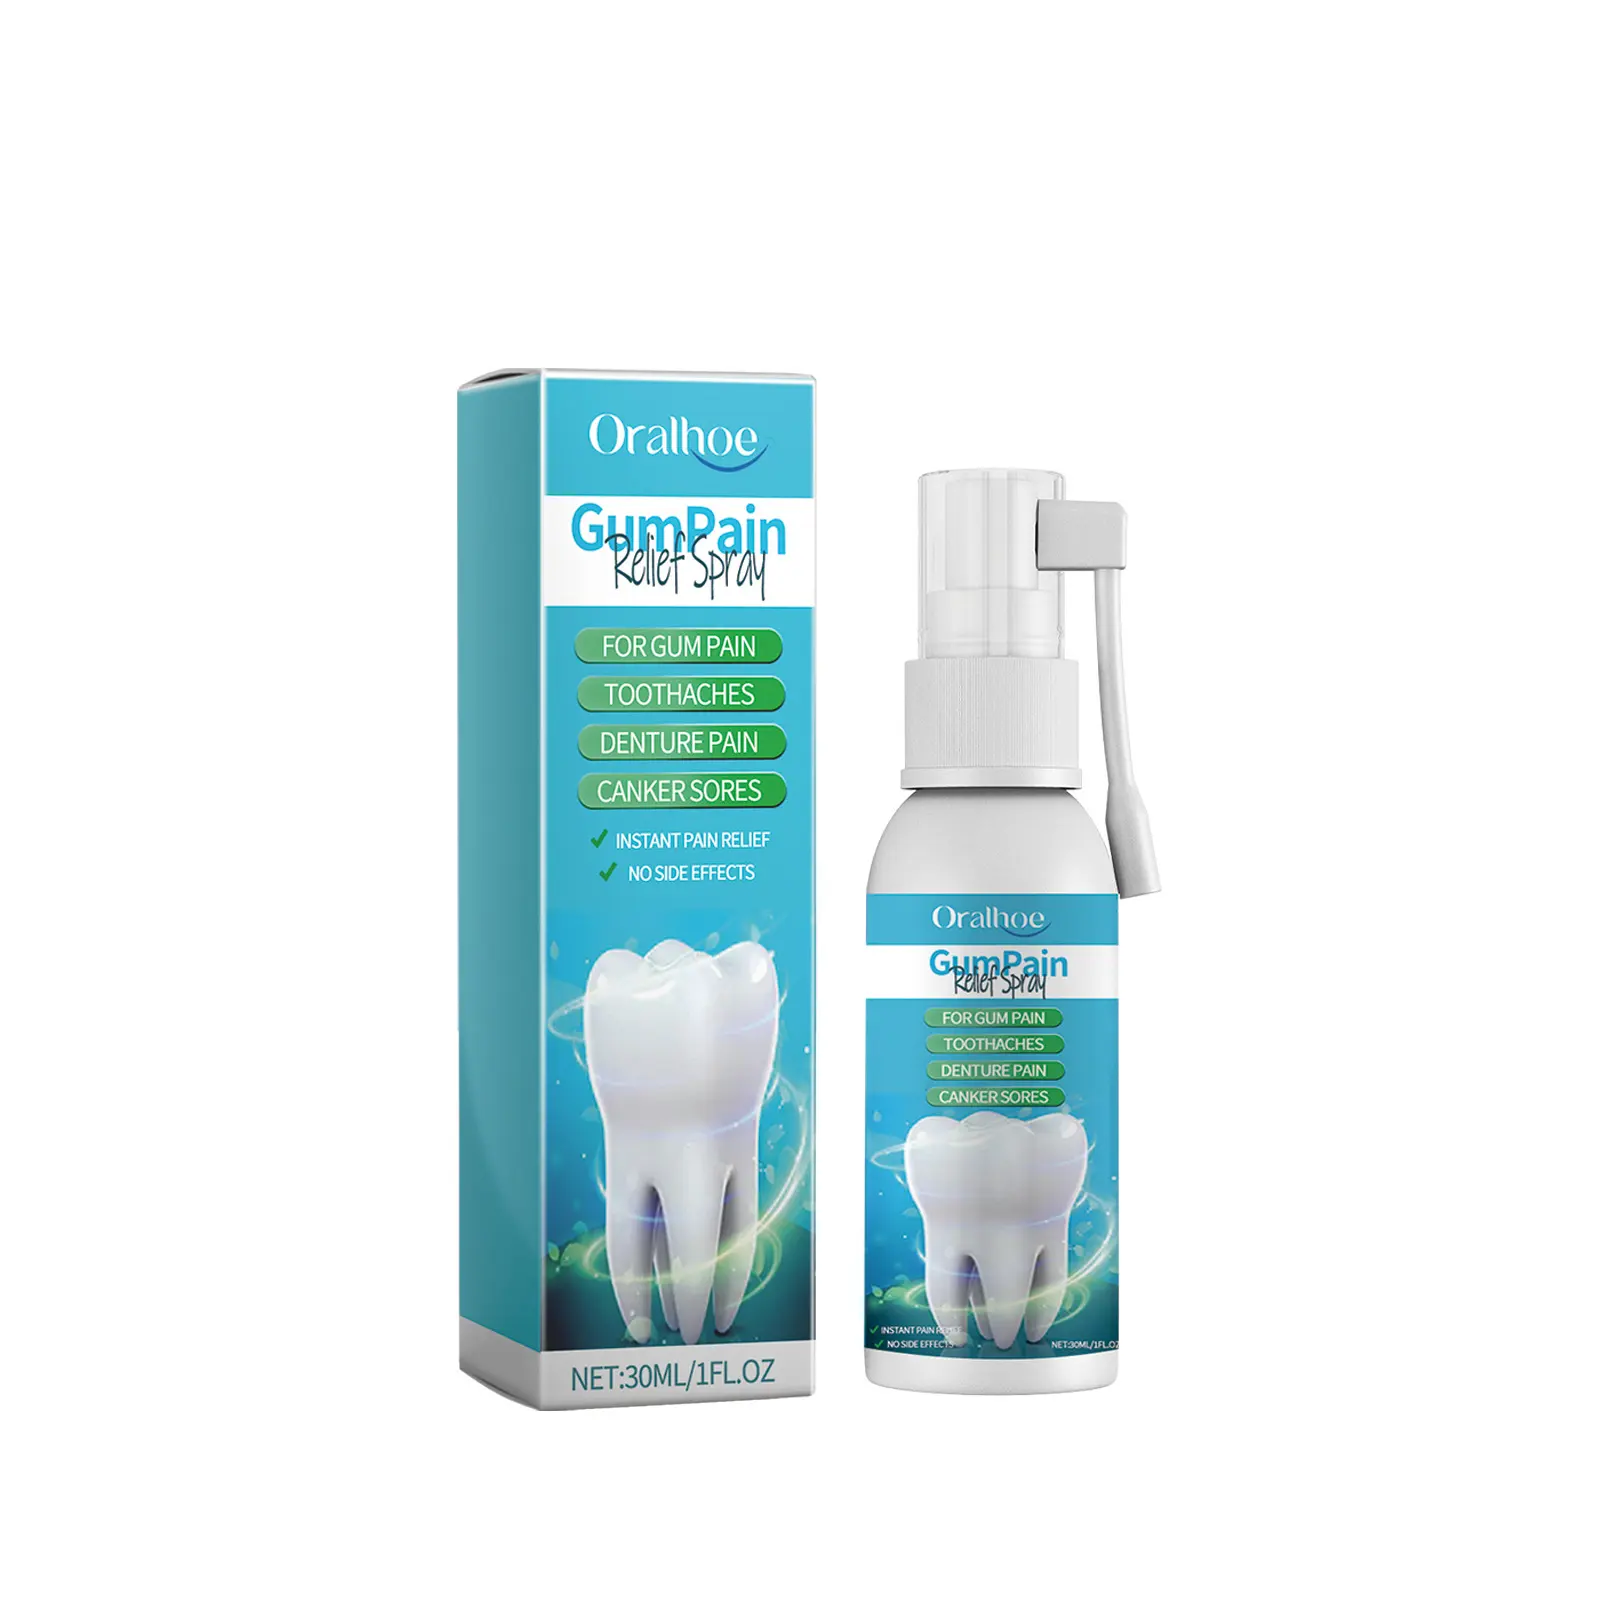 Neuzugang der Mundpflege Zahnfleisch-Spray Zahnfleisch Schmerzen lindernd Vorfall von Geschwürzen geschwollenes Zahnfleisch Spray Zahnfleisch Zahnreparaturflüssigkeit